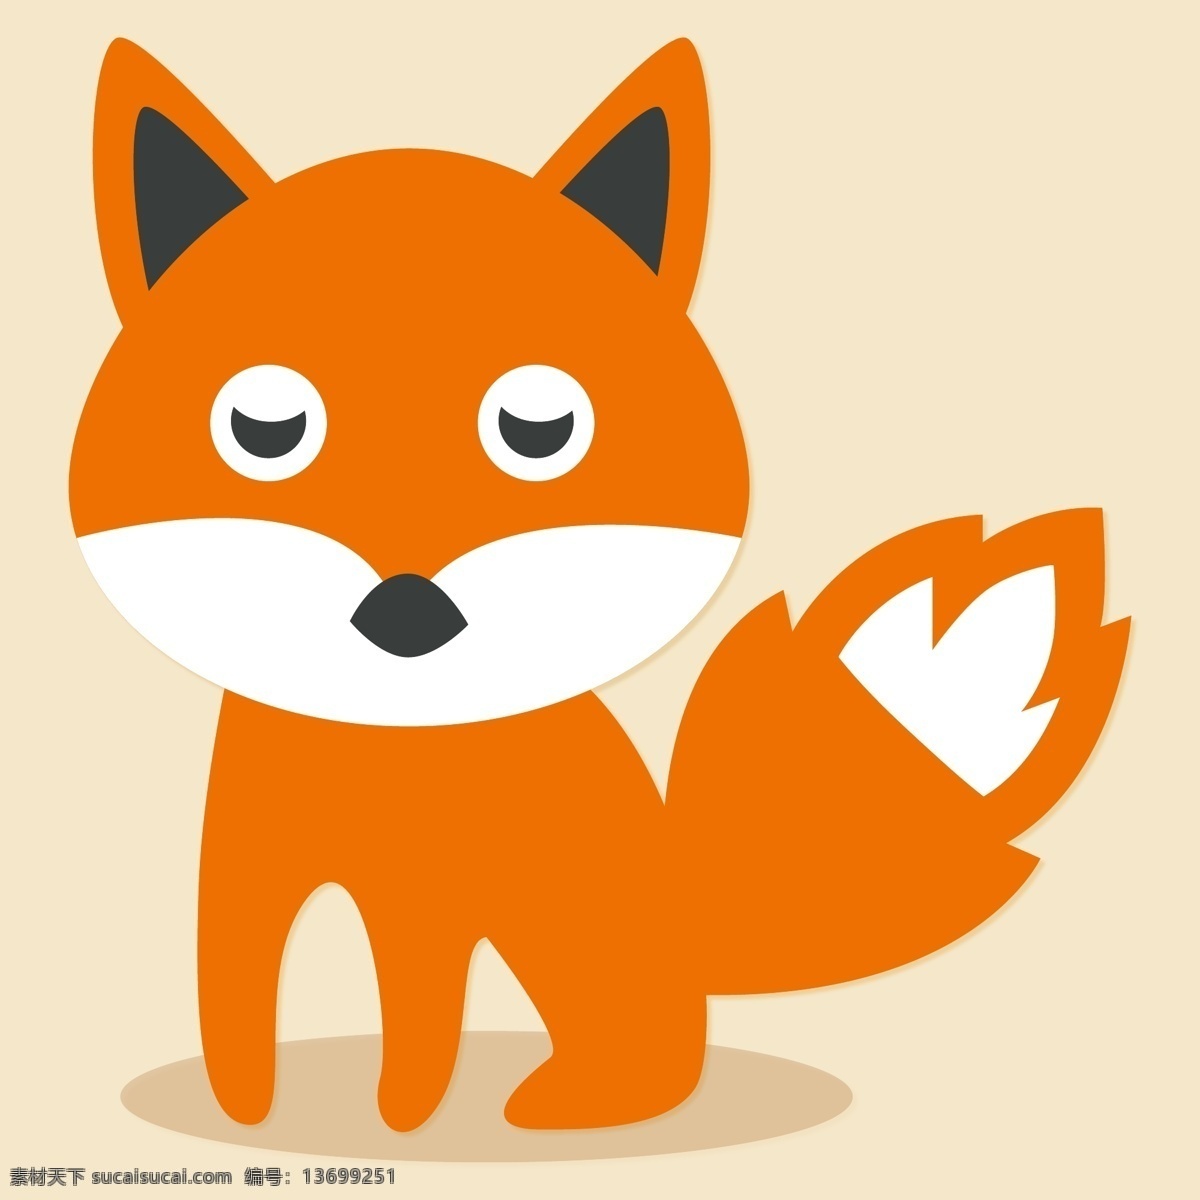 卡通 狐狸 矢量图 卡通素材 矢量素材 手绘素材 动物